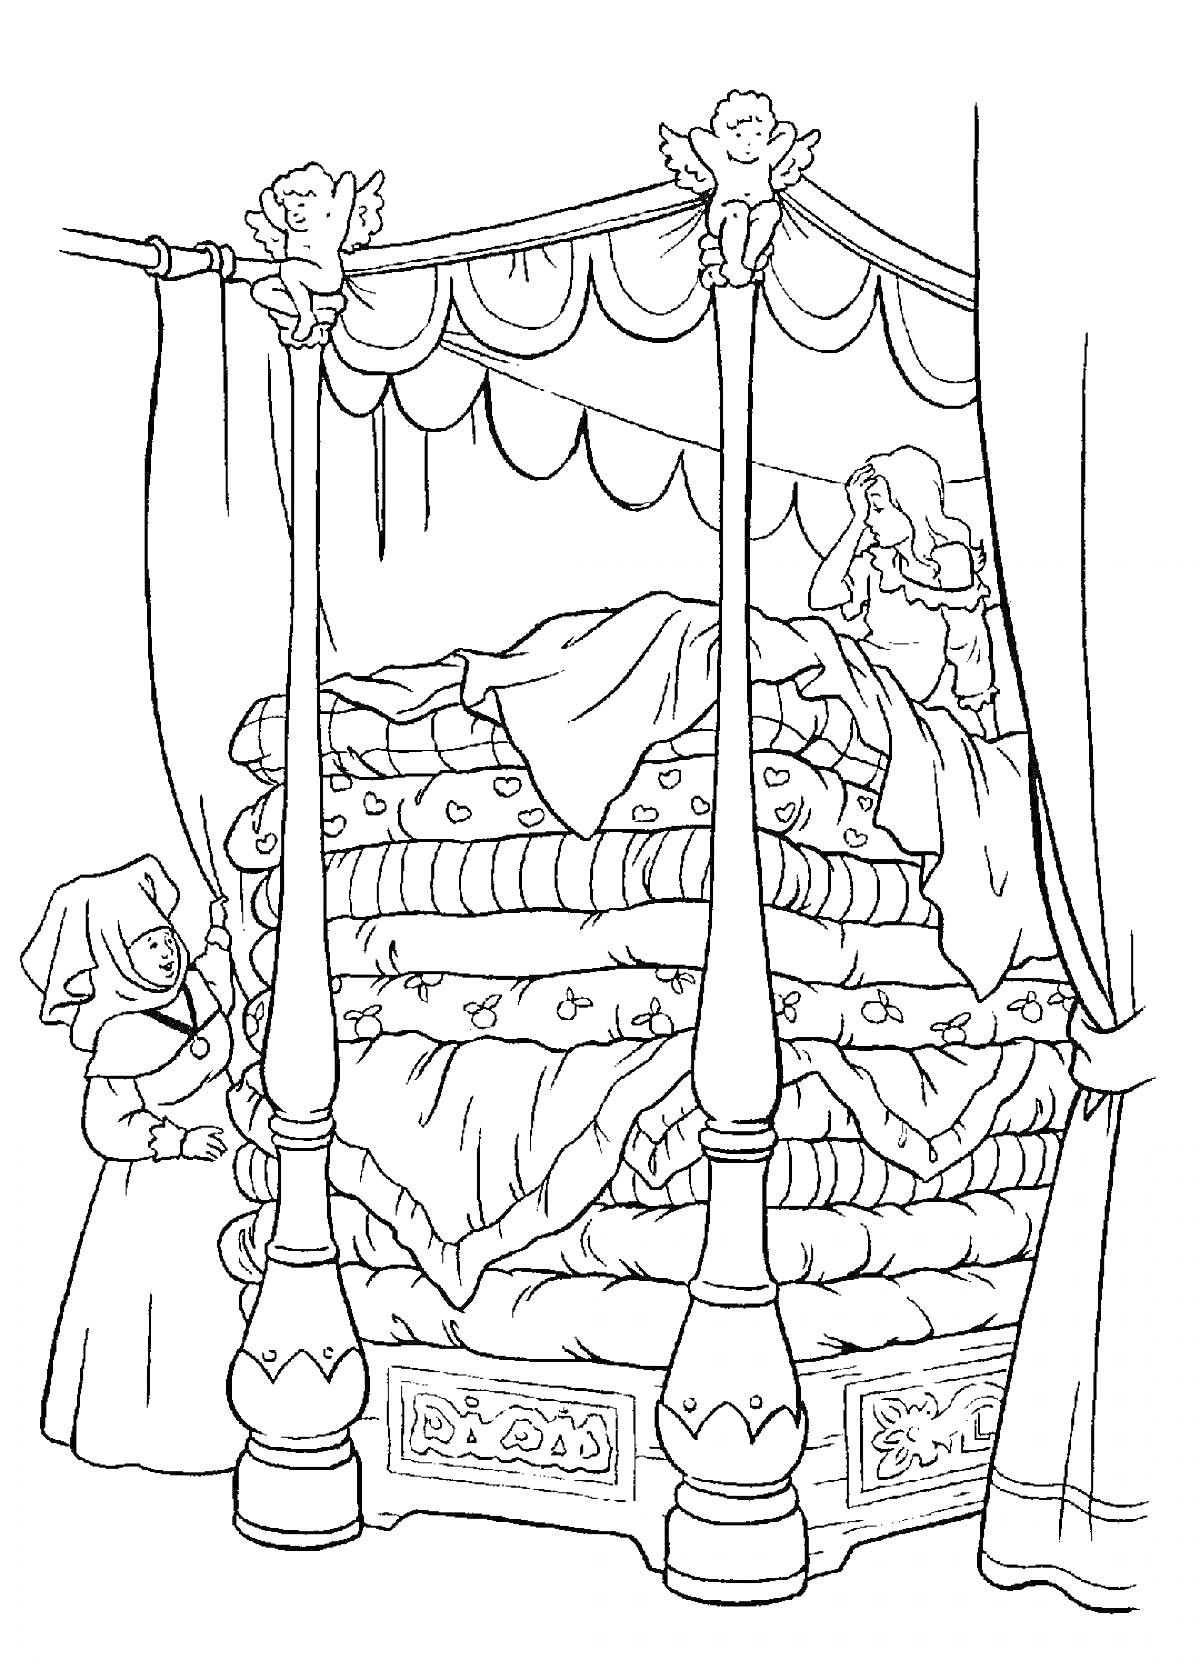 Принцесса на горошине, девушка на кровати с множеством матрасов, кровать с балдахином, женщина у кровати